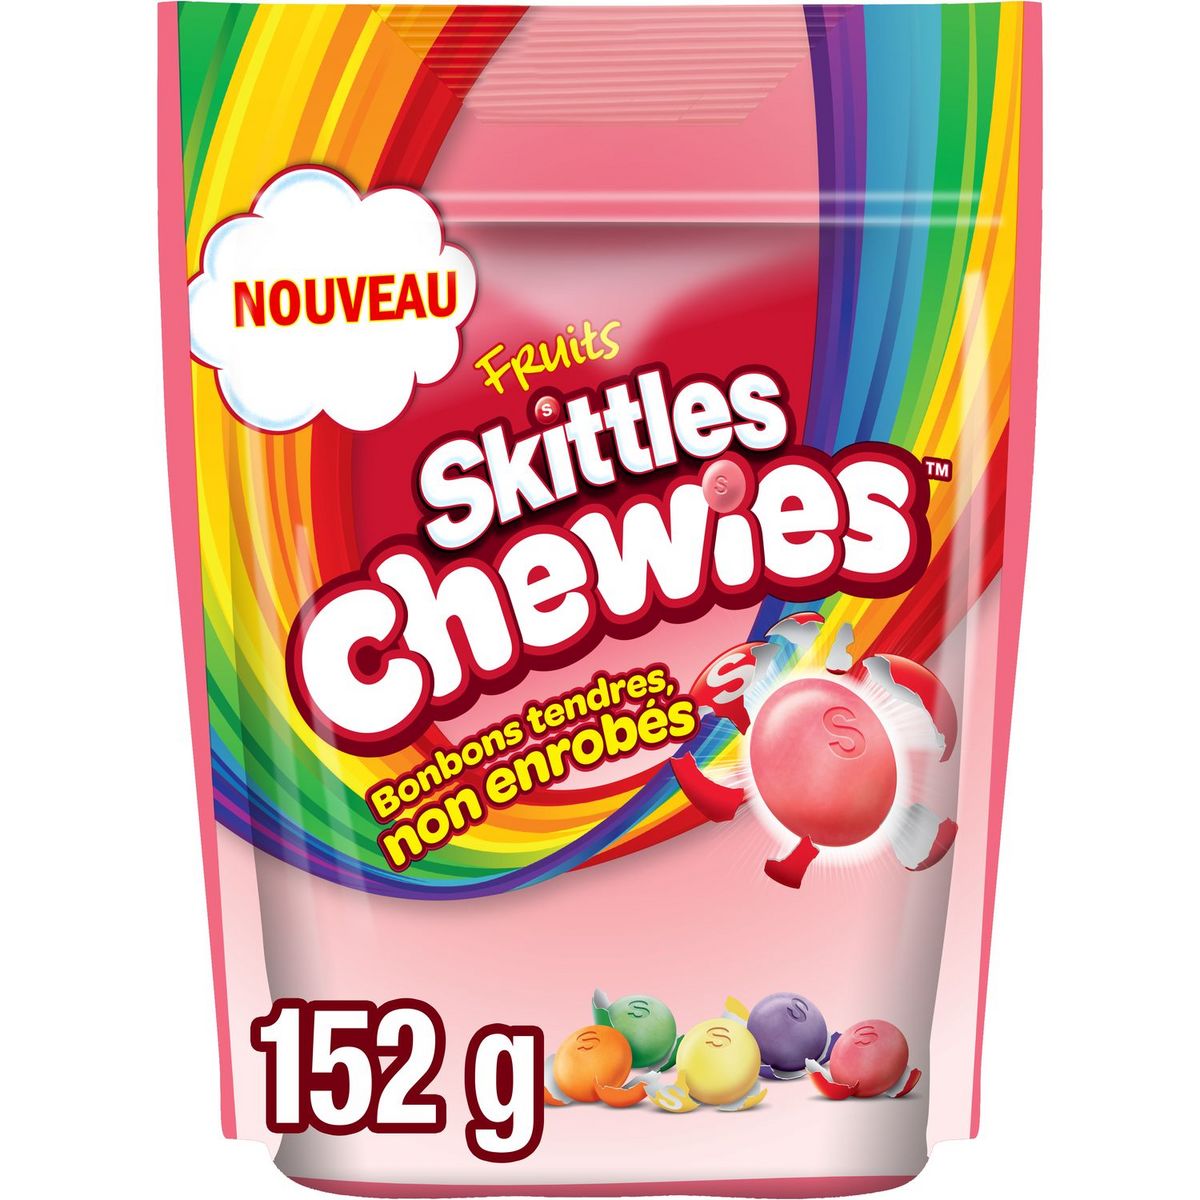 SKITTLES Chewies bonbons tendres non enrobés aux fruits 152g pas cher 